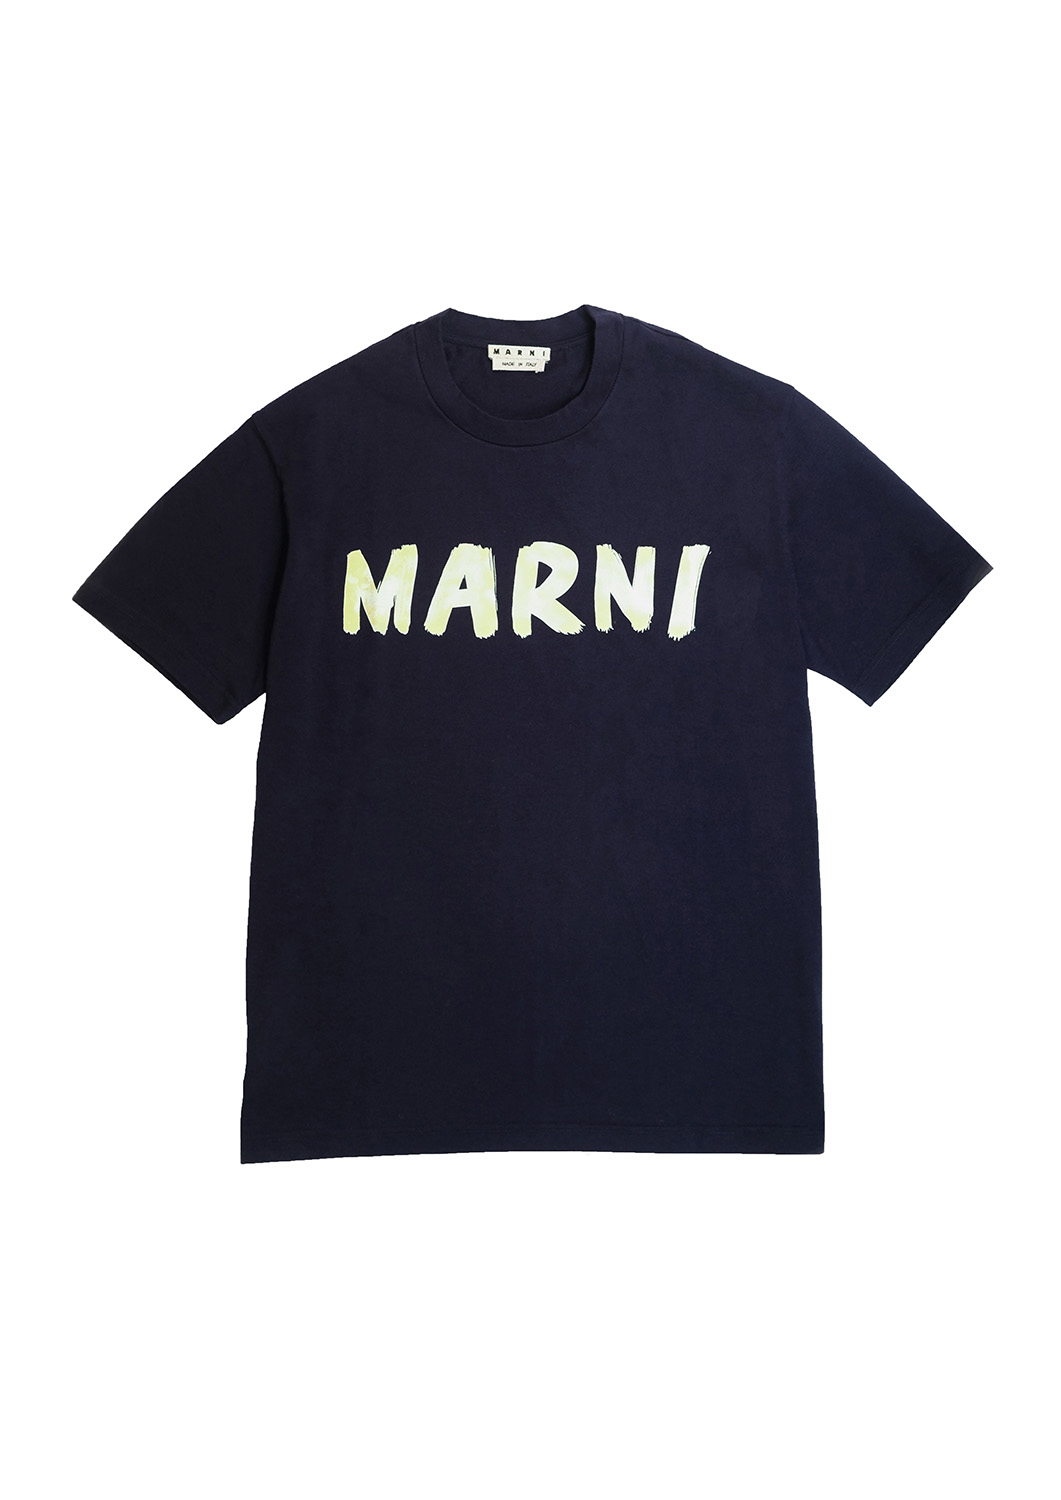 MARNI】2020SS ハンドペイントロゴTシャツ - Tシャツ/カットソー(半袖